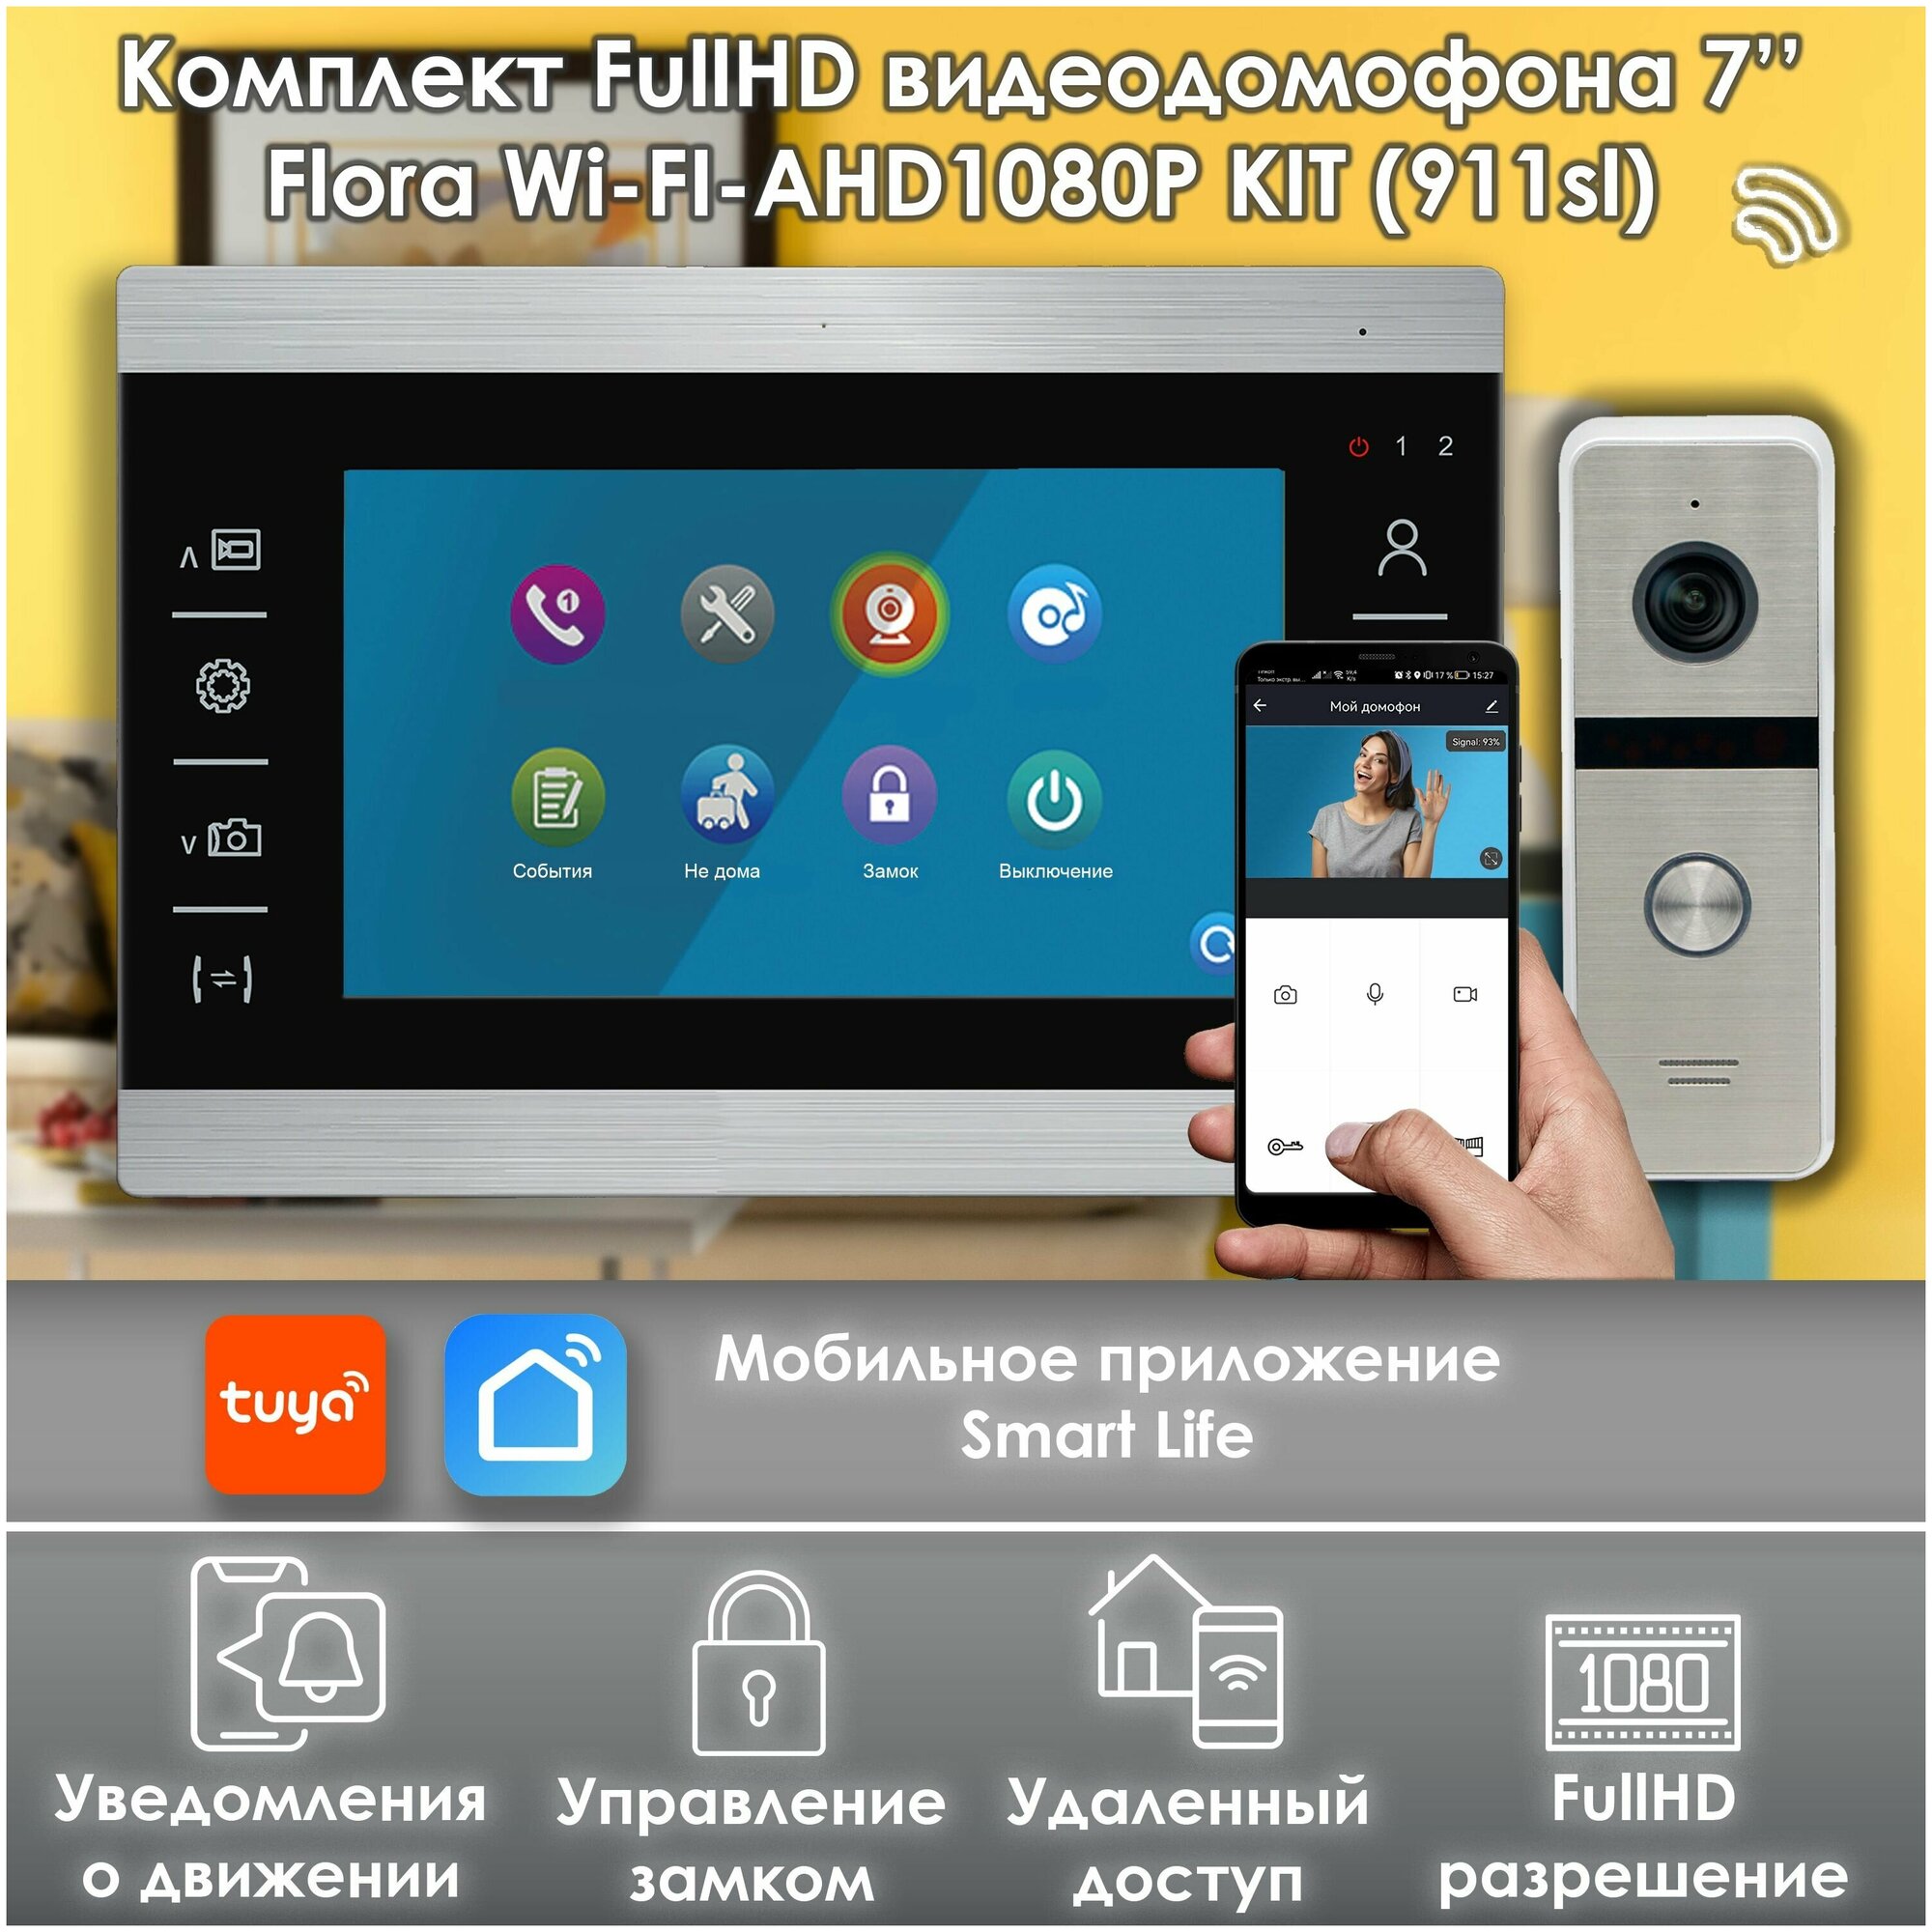 Комплект видеодомофона Flora Wi-Fi AHD+вызывная панель 911(sl) Full HD, черный. Экран 7". Поддержка Android и IOS. Совместим с подъездным домофоном через модуль сопряжения.